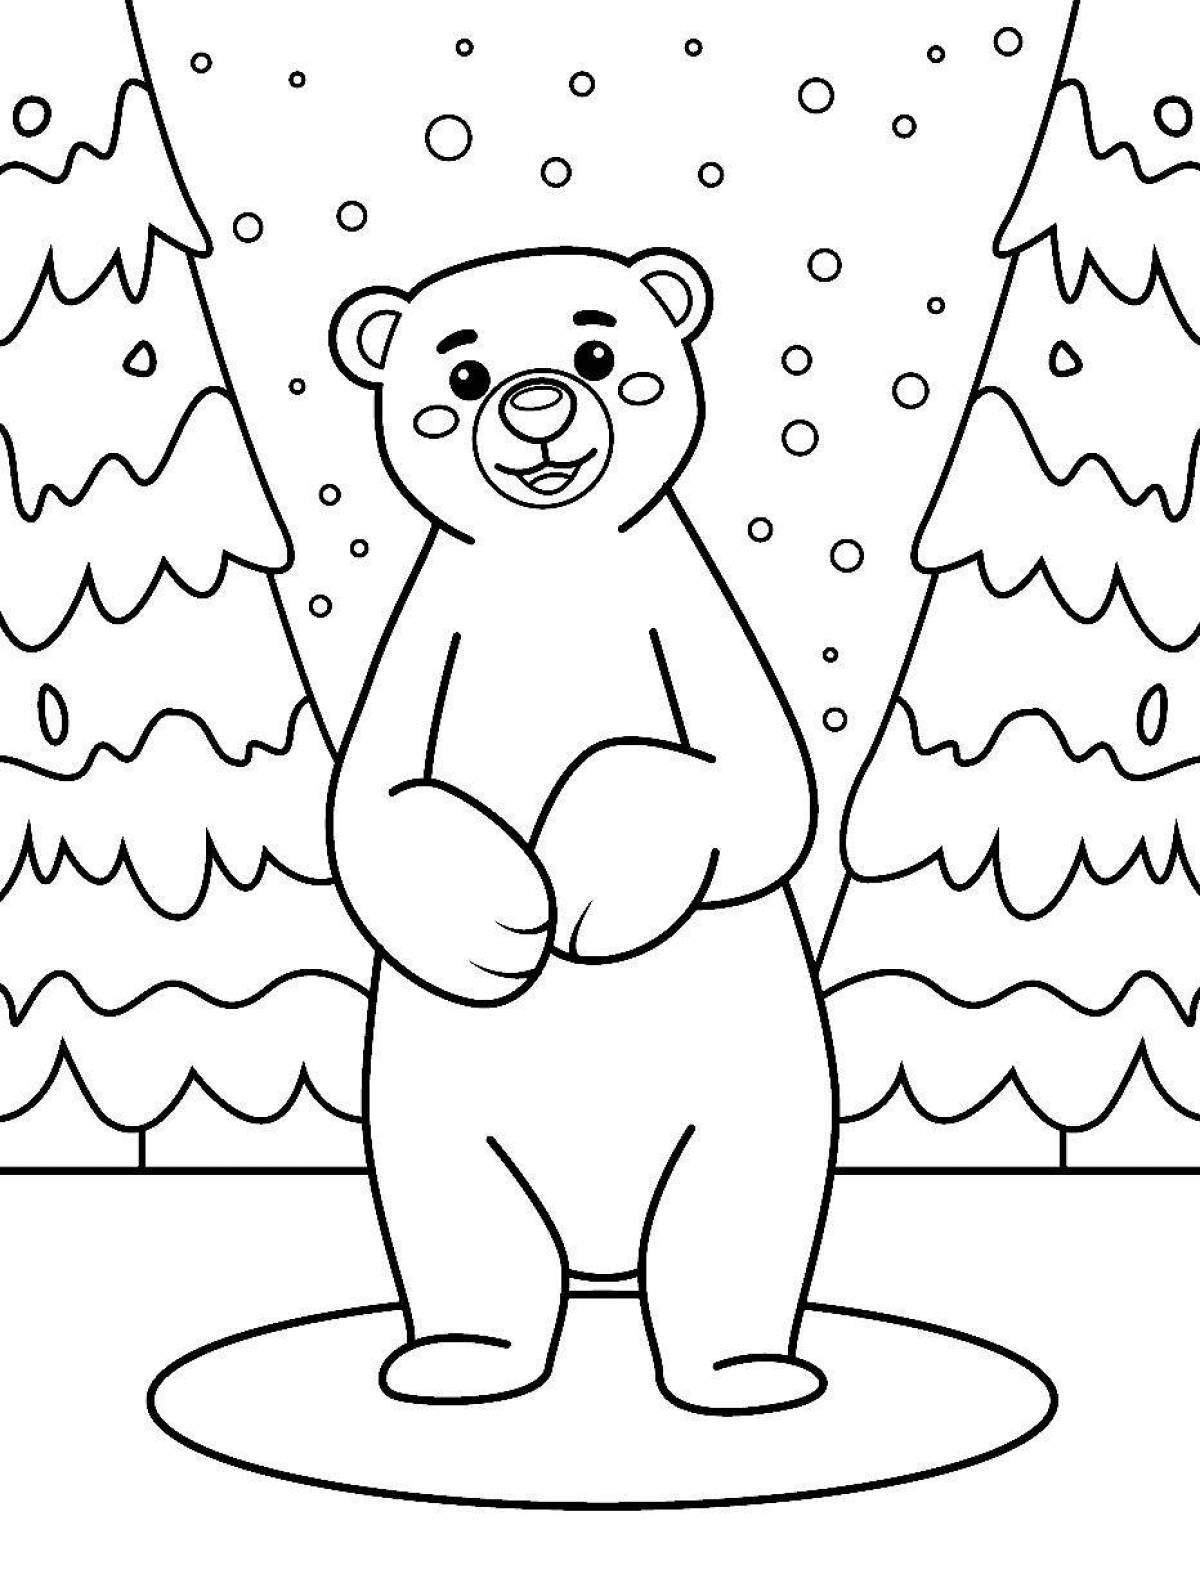 Веселый белый медведь раскраски для детей 6-7 лет